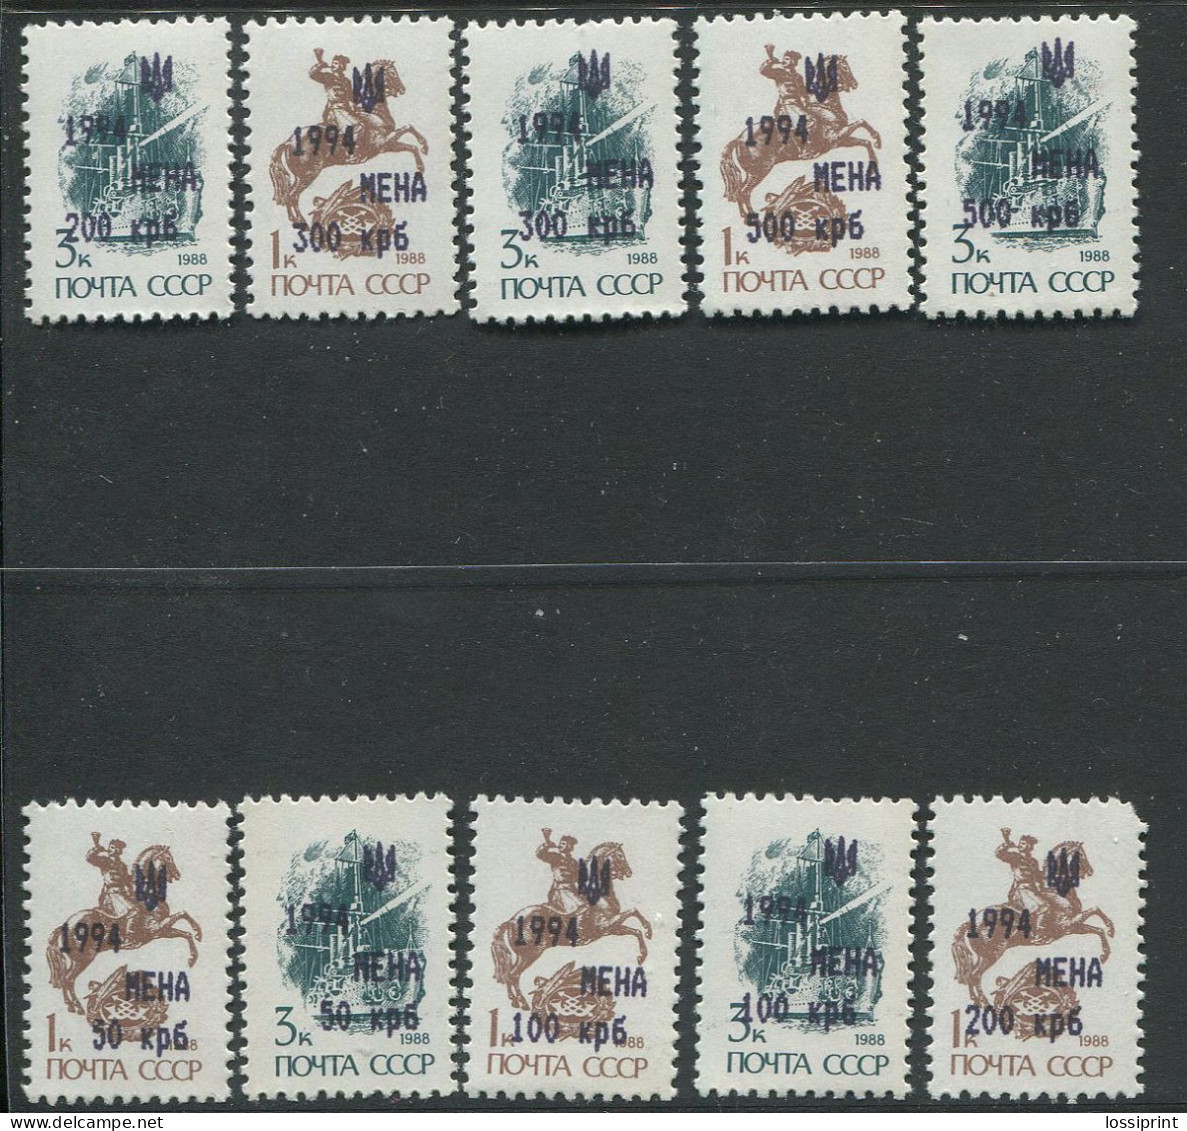 Ukraina:Ukraine:Unused Overprinted Stamps Serie, Chernihiv Oblast, Mena, 1994, MNH - Ukraine